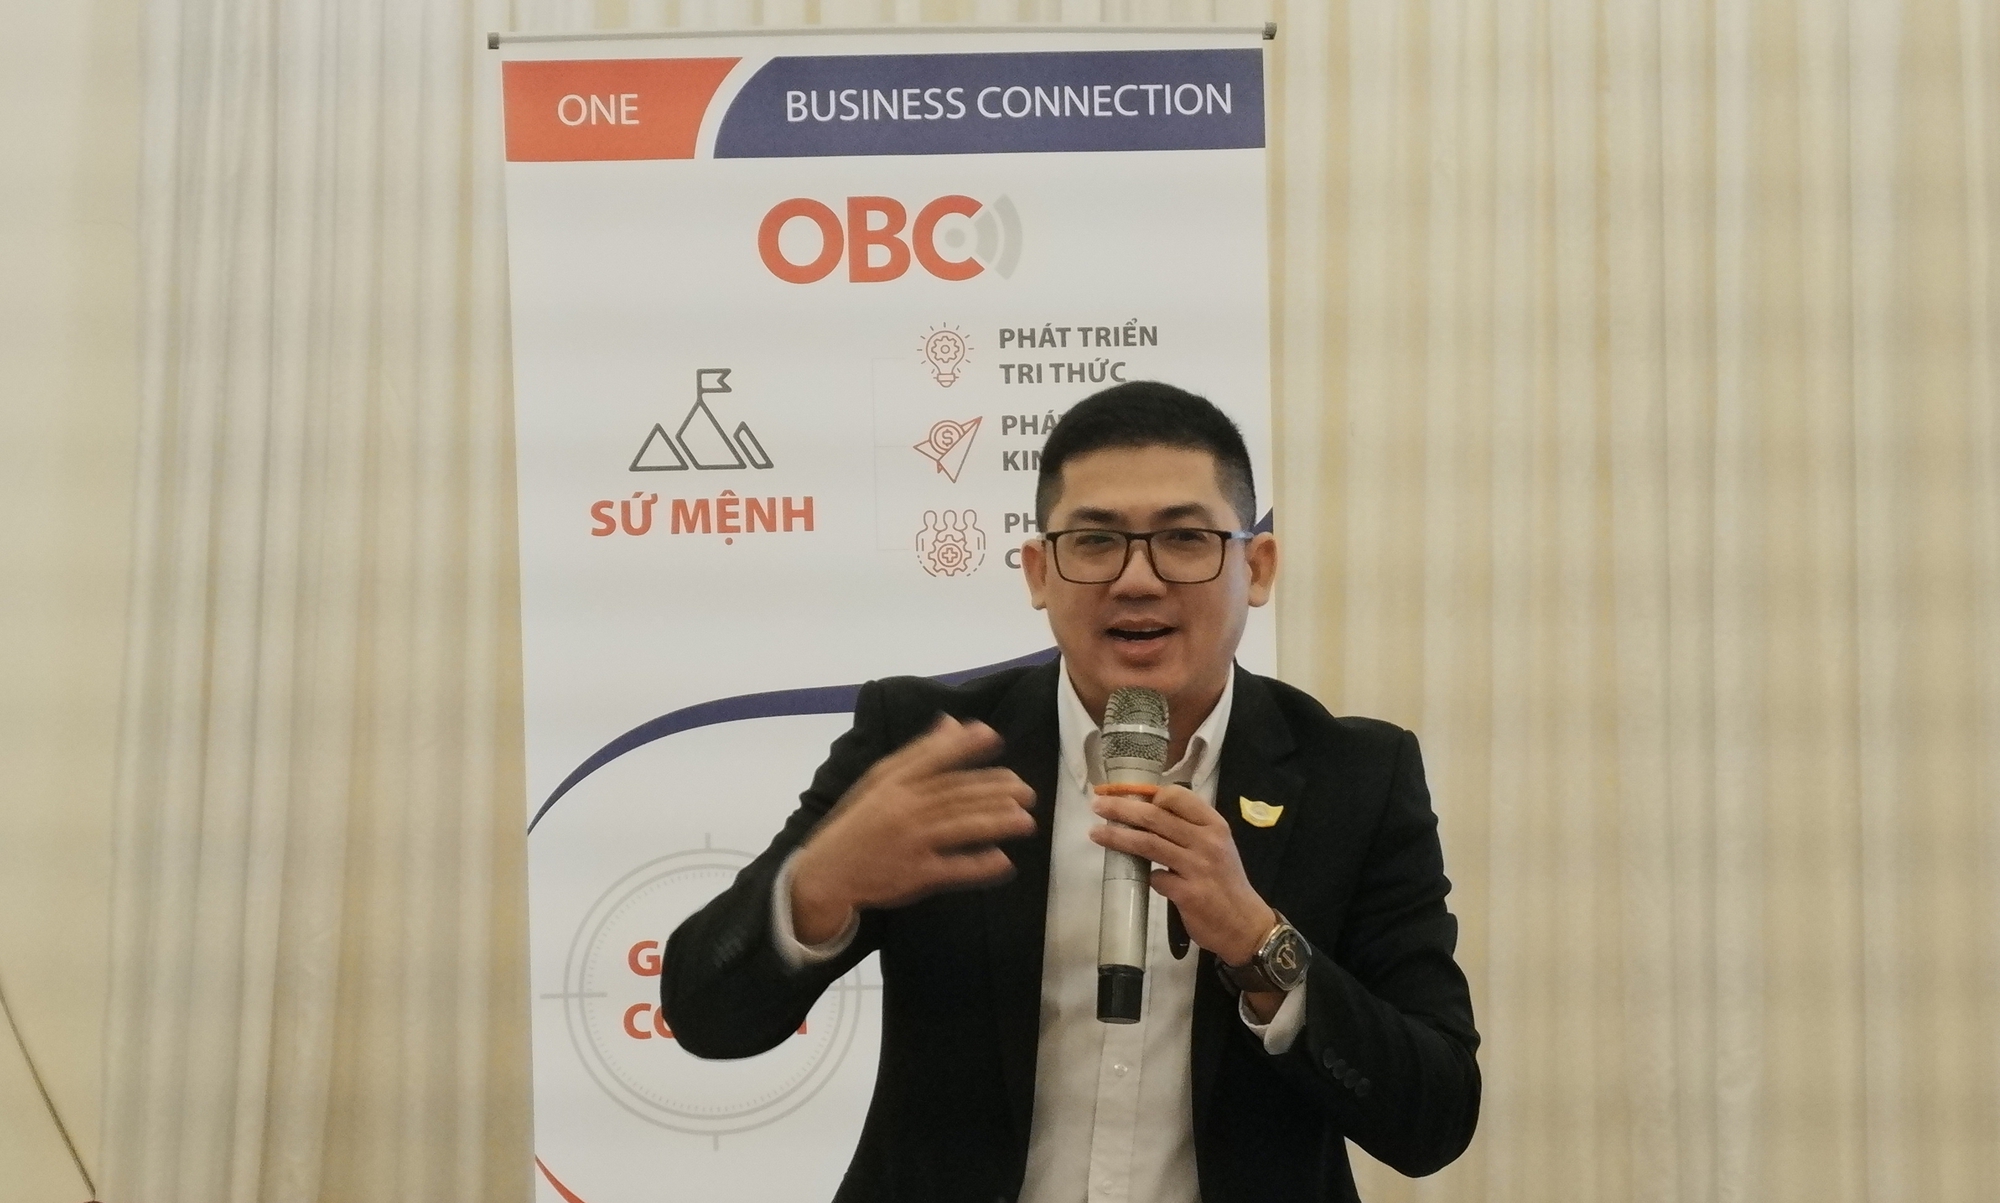 Cộng đồng doanh nghiệp OBC Bình Thuận: Cầu nối cho doanh nghiệp đưa sản phẩm đến người tiêu dùng - Ảnh 1.